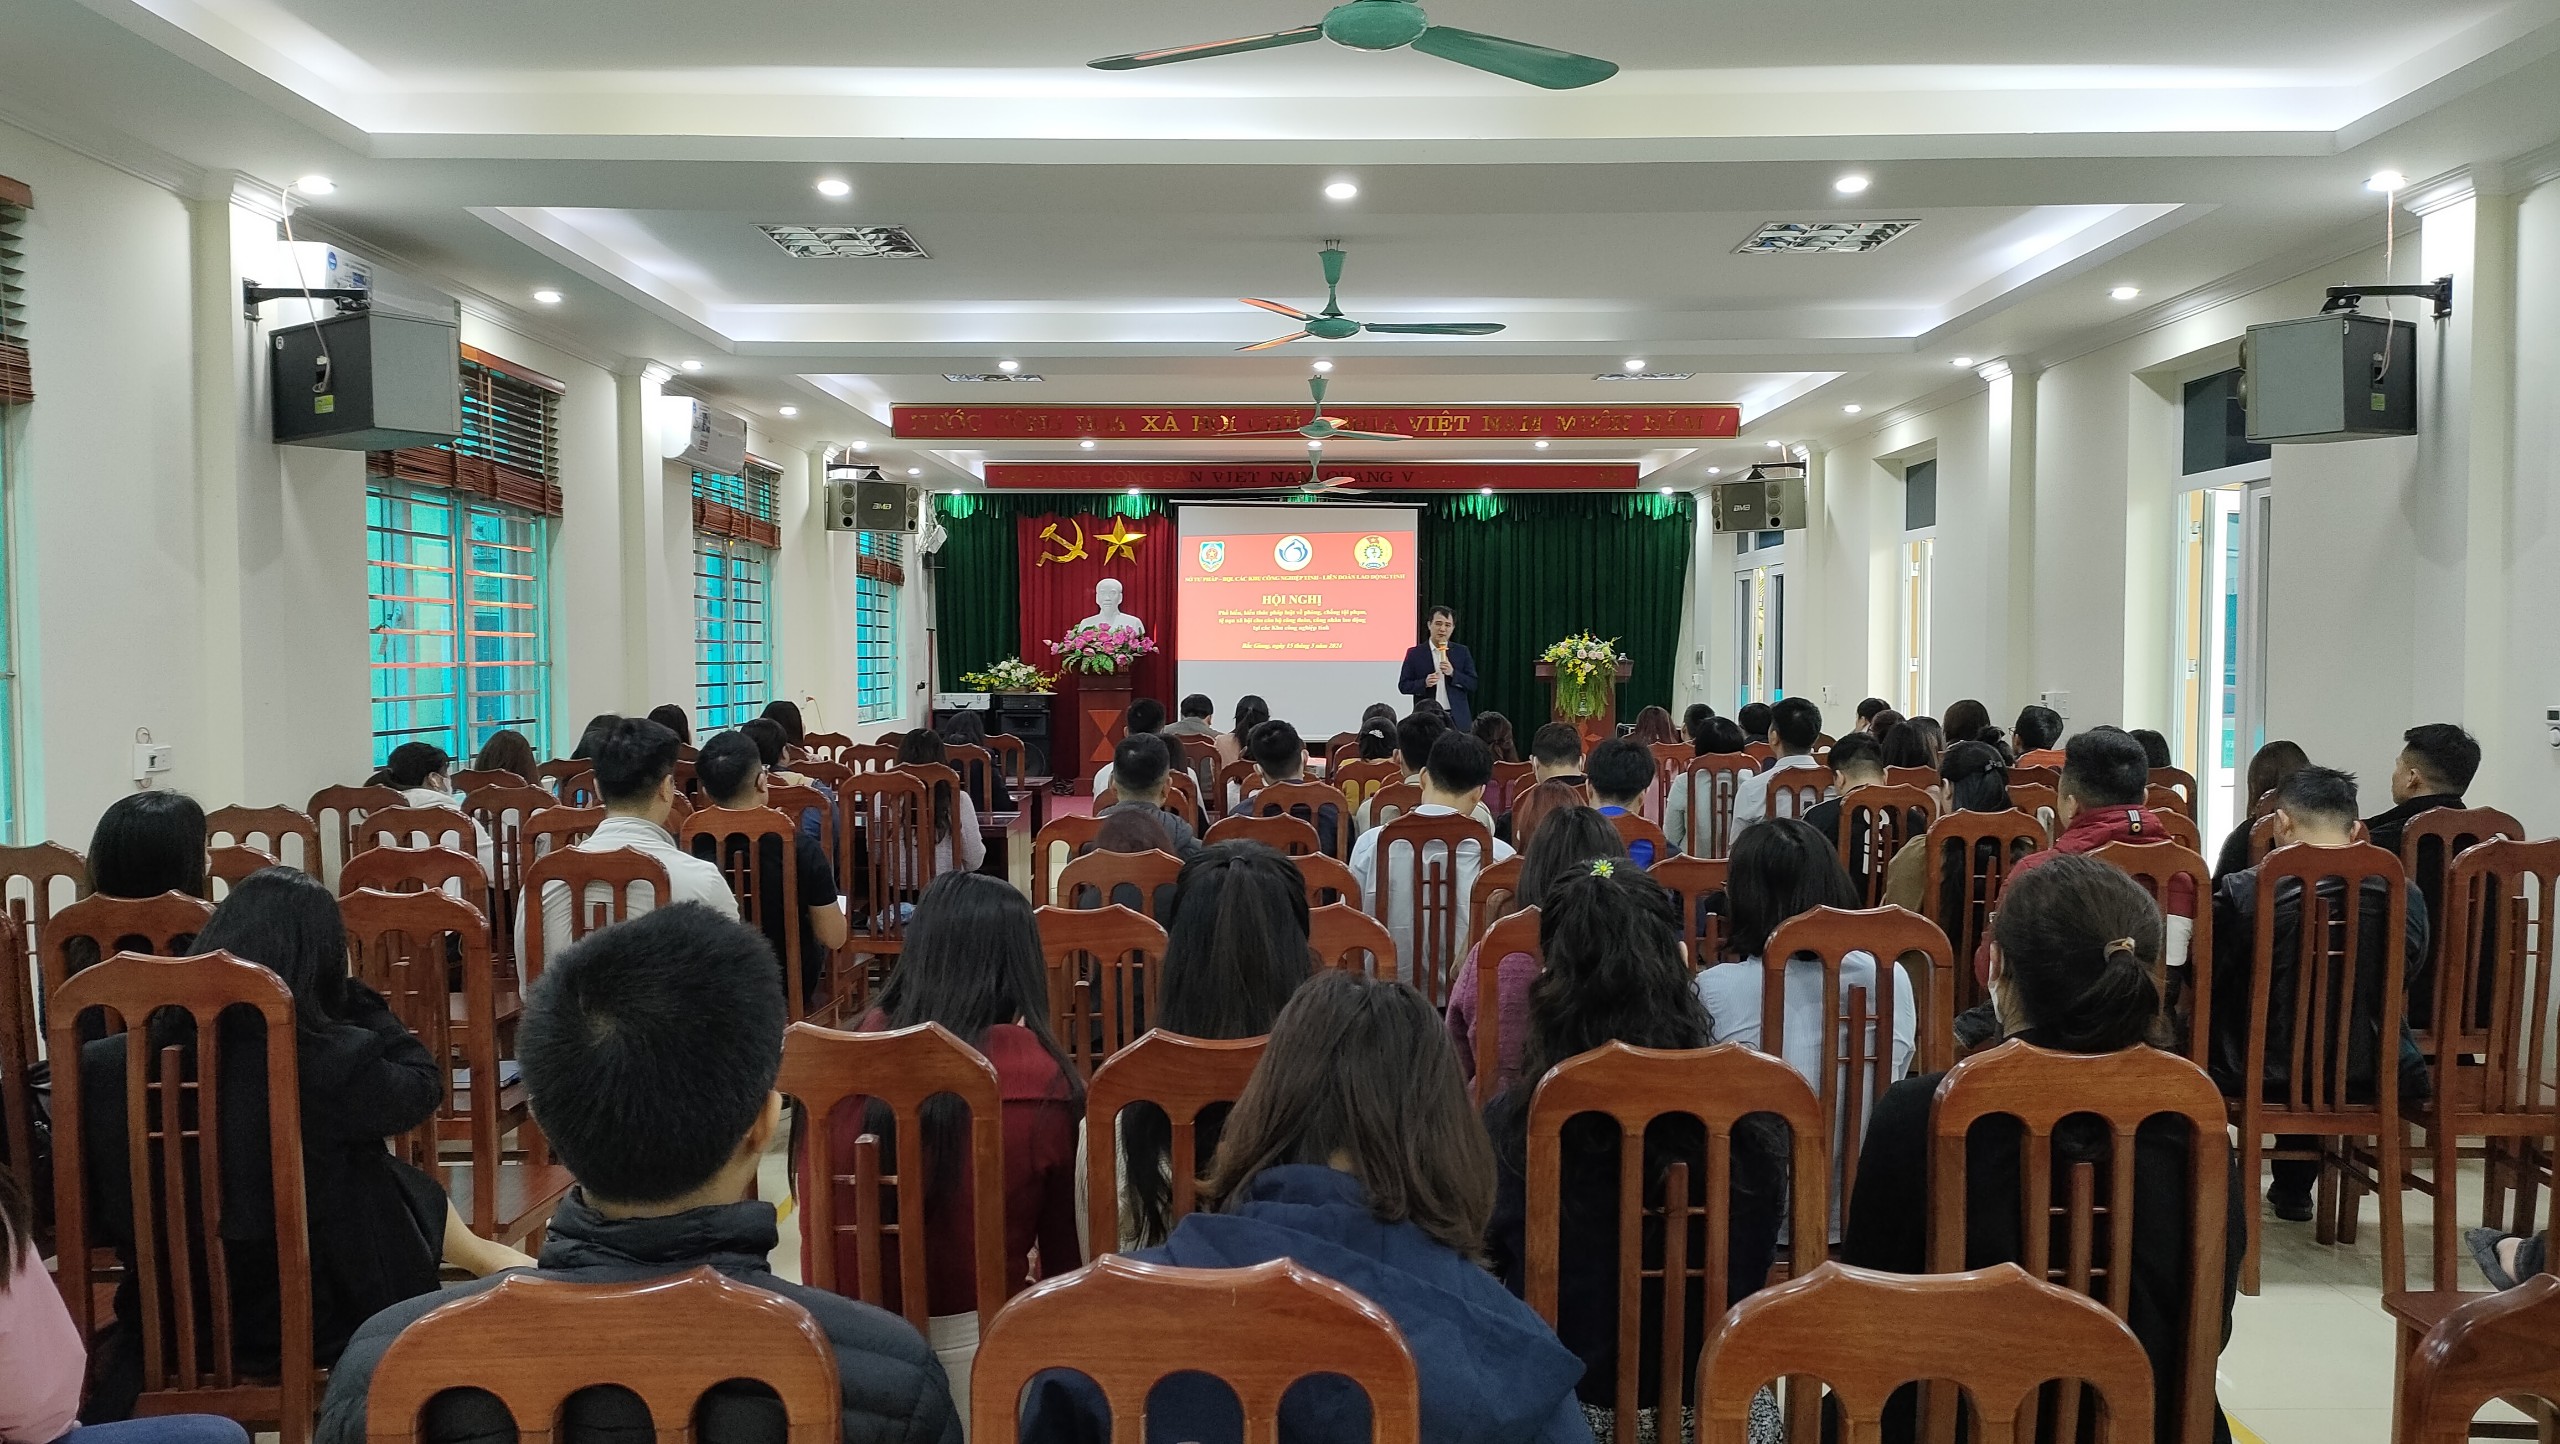 Hội nghị tuyên truyền, phổ biến về phòng, chống tội phạm, tệ nạn xã hội tại các Khu công nghiệp trên địa bàn tỉnh Bắc Giang|https://bqlkcn.bacgiang.gov.vn/vi_VN/chi-tiet-tin-tuc/-/asset_publisher/xme8LCPEx4VA/content/hoi-nghi-tuyen-truyen-pho-bien-ve-phong-chong-toi-pham-te-nan-xa-hoi-tai-cac-khu-cong-nghiep-tren-ia-ban-tinh-bac-giang